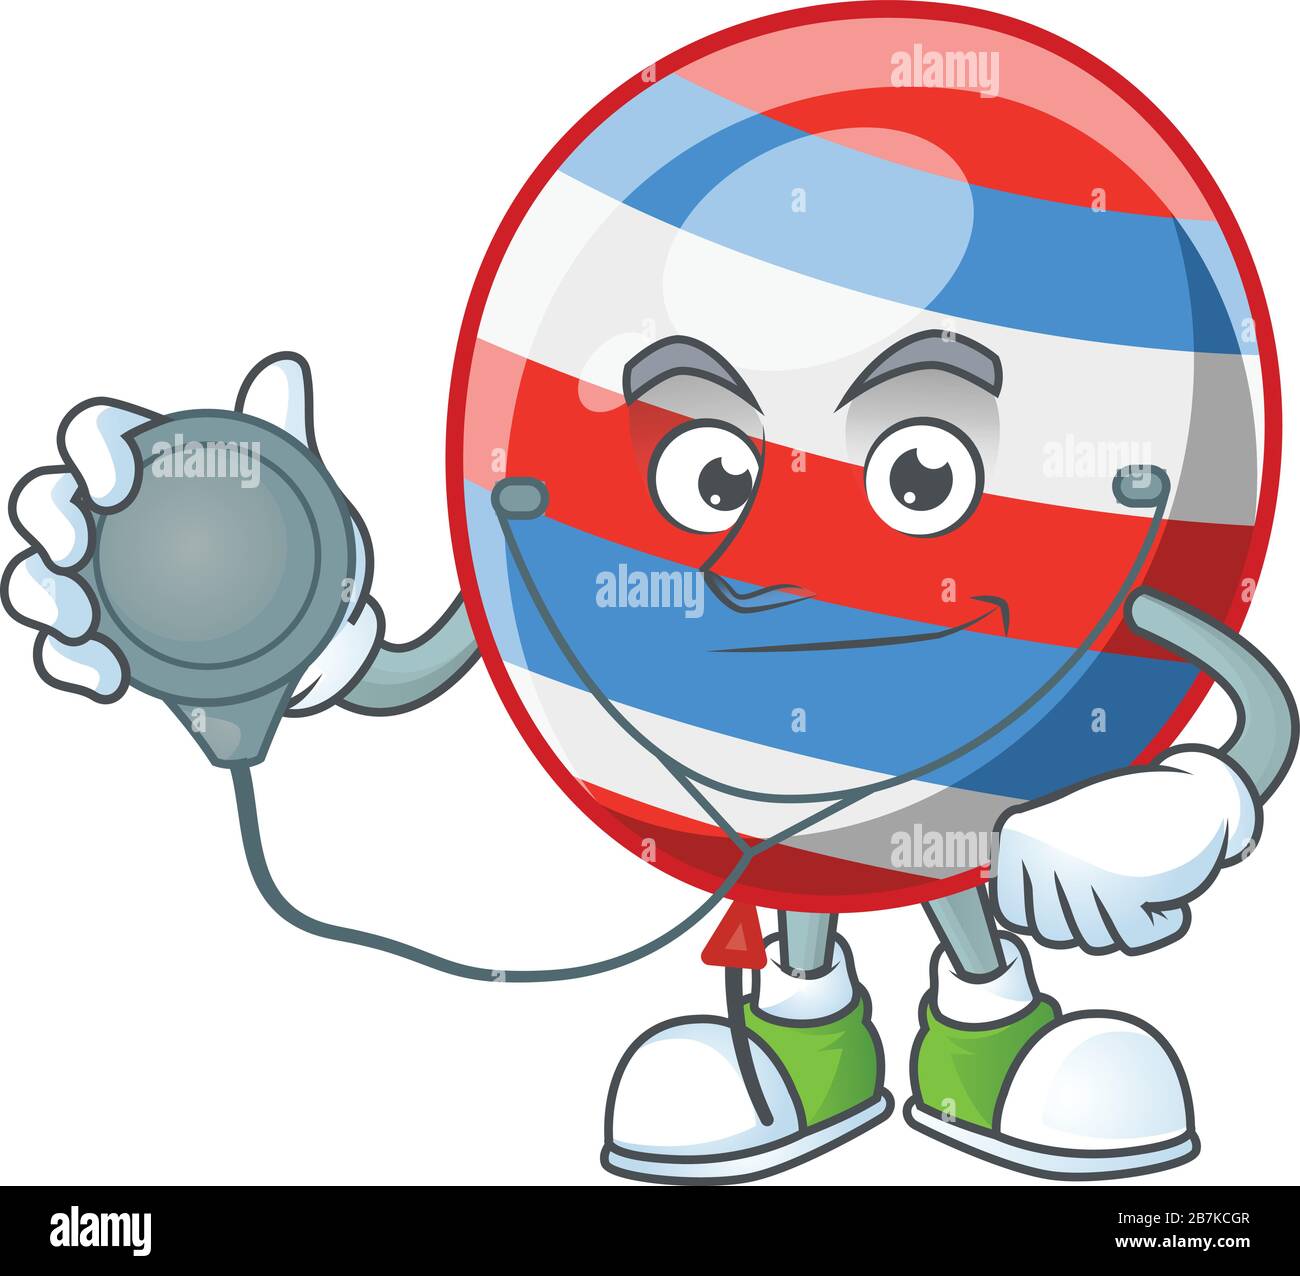 Un personnage de dessin animé de jour d'indépendance ballon docteur en utilisant des outils Illustration de Vecteur